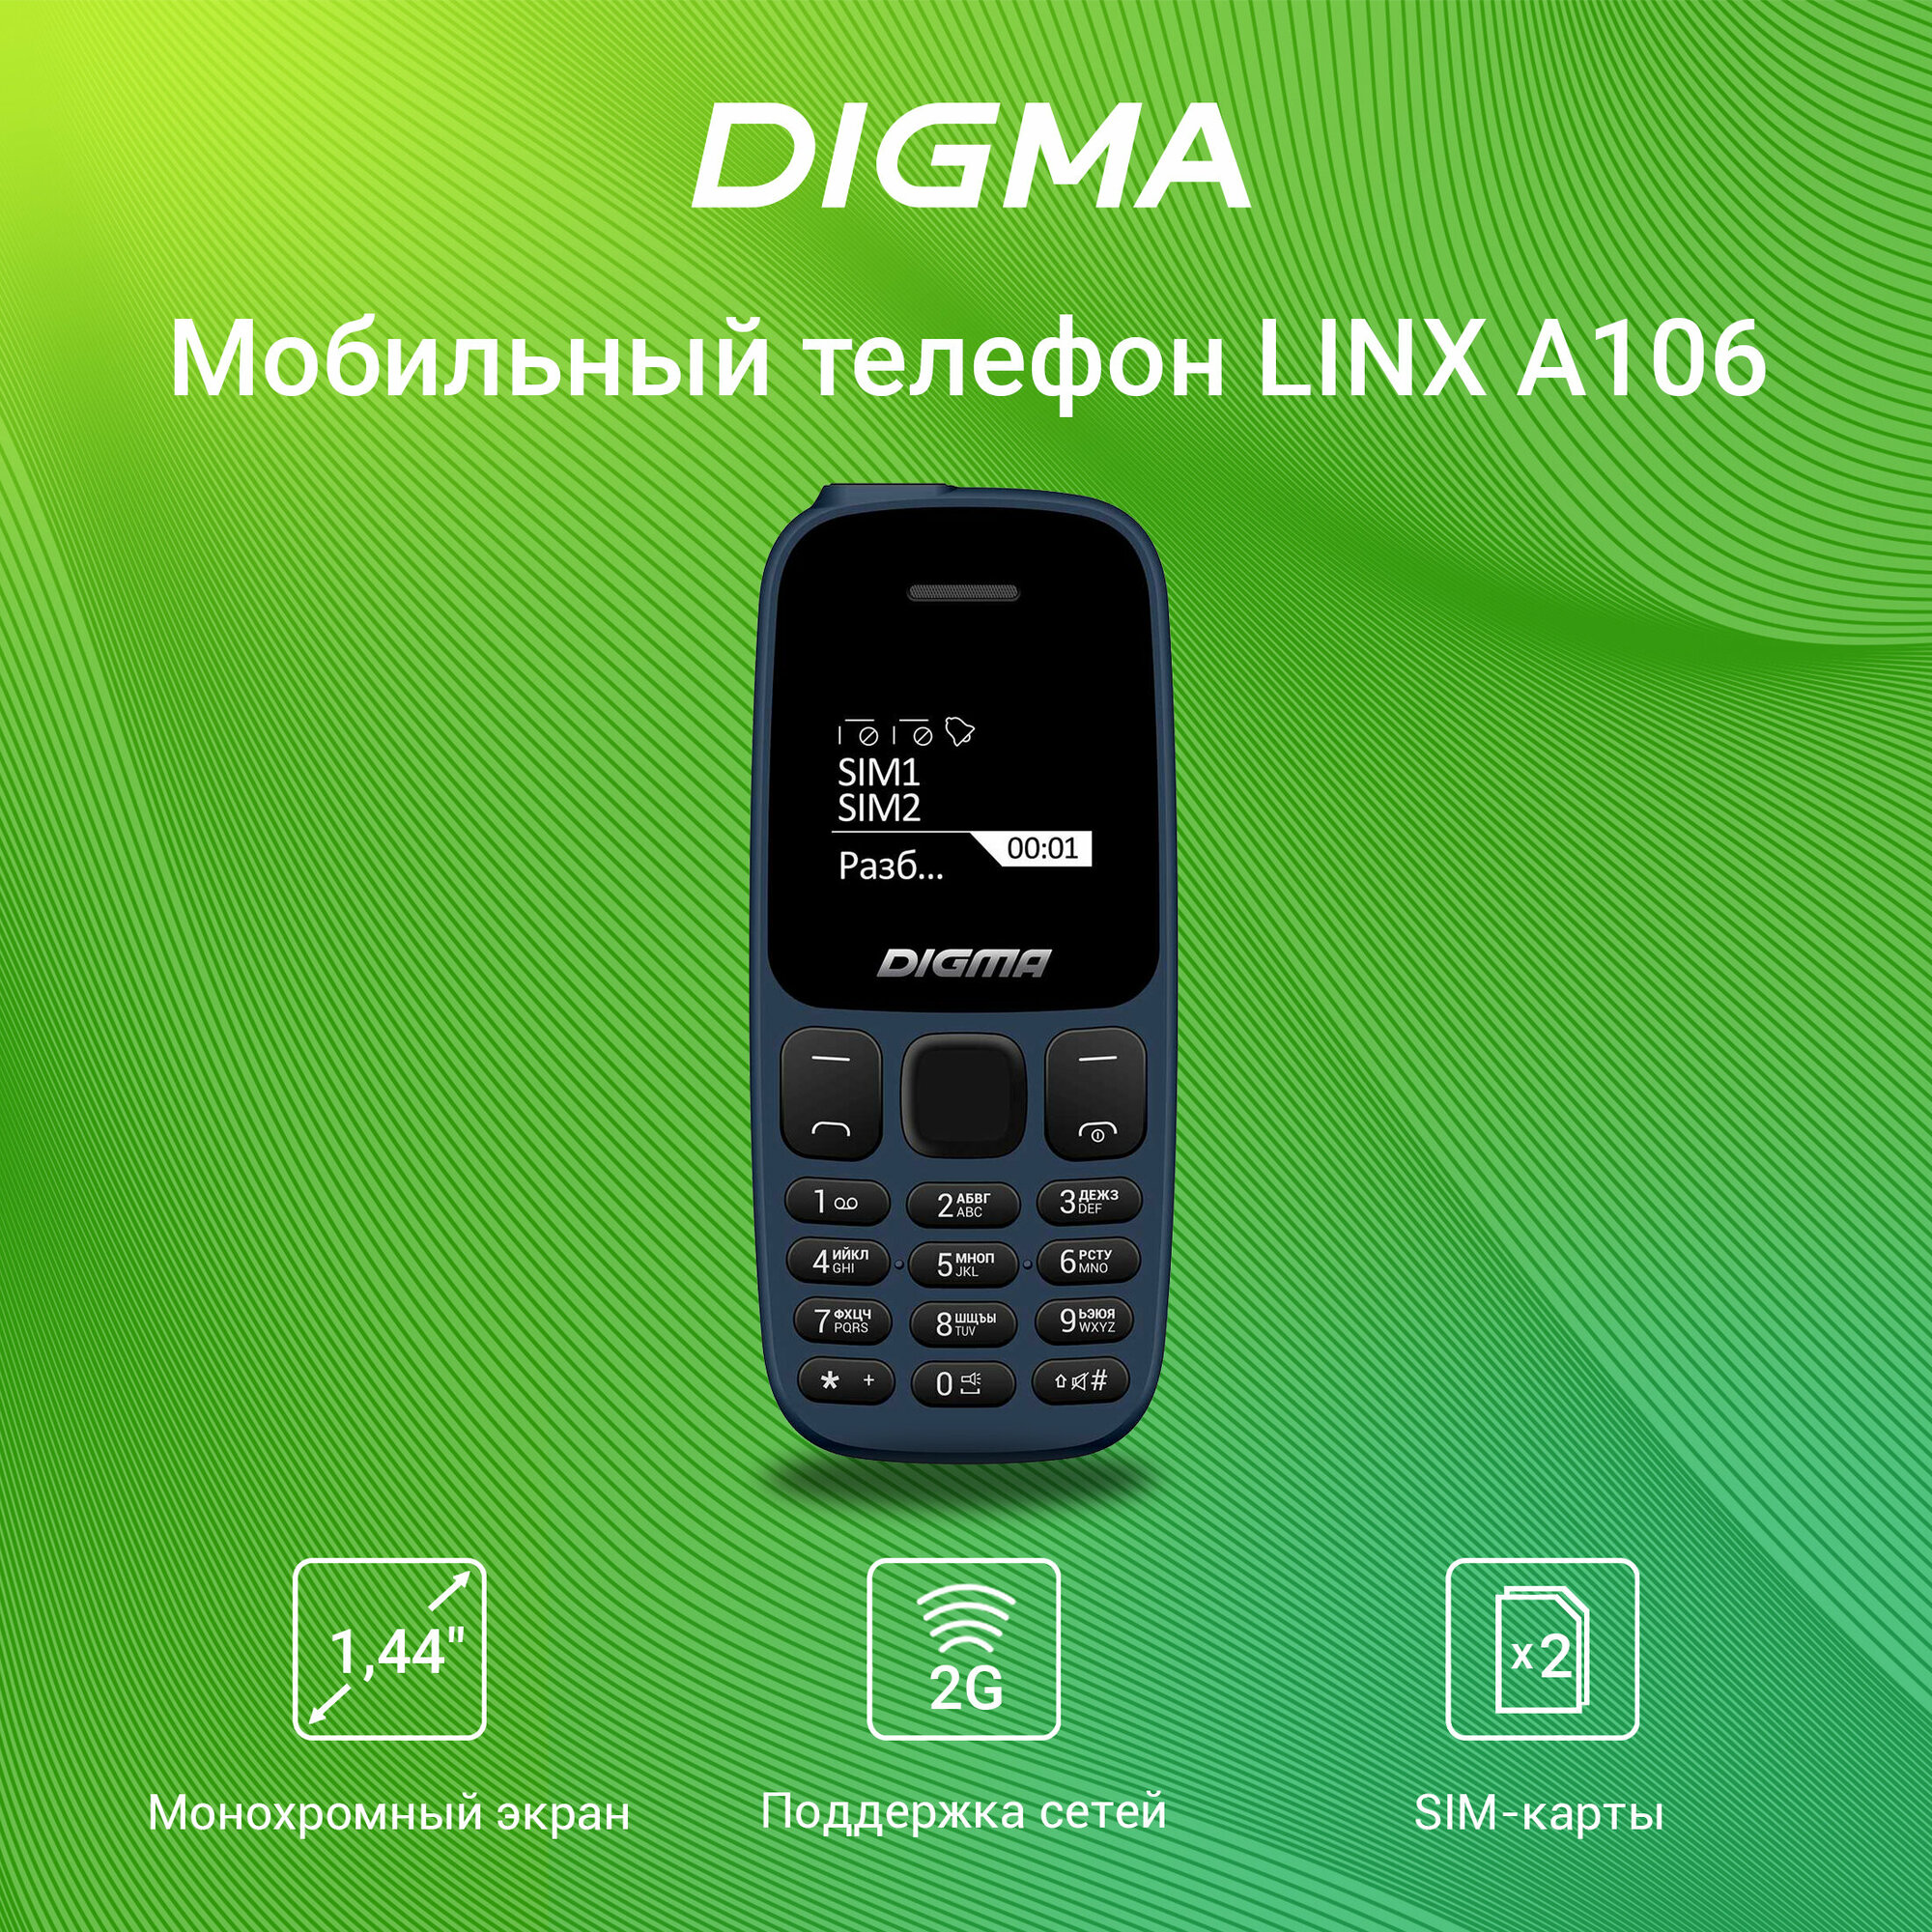 Мобильный телефон Digma Linx A106 синий